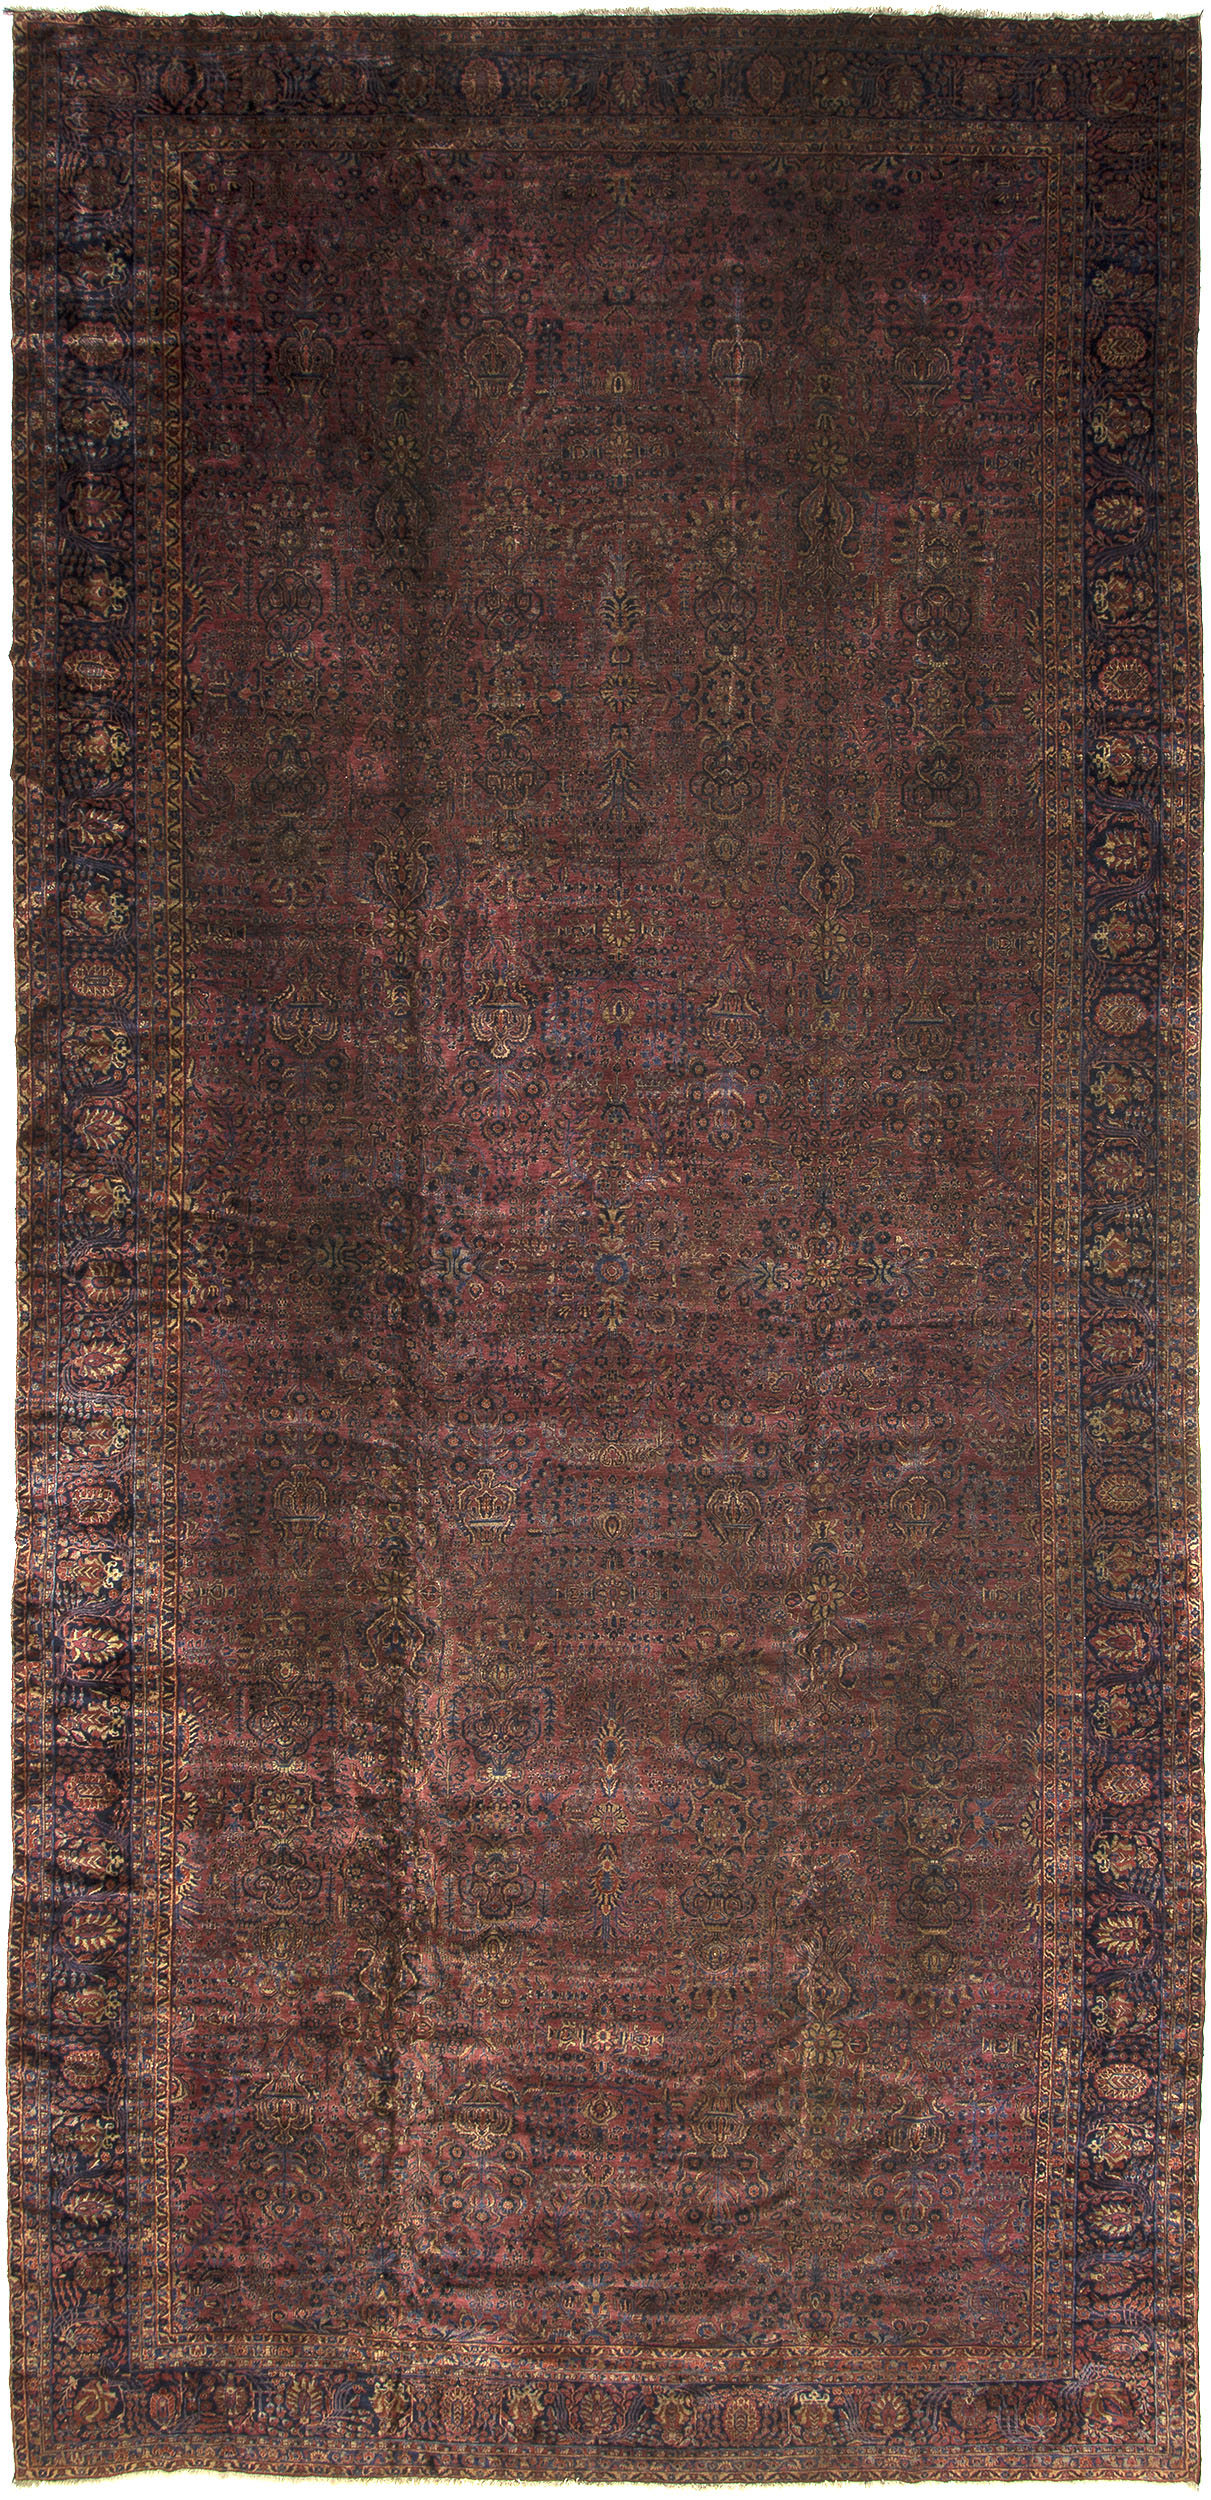 Sarouk Carpet 28' 8" x 13' 3" 